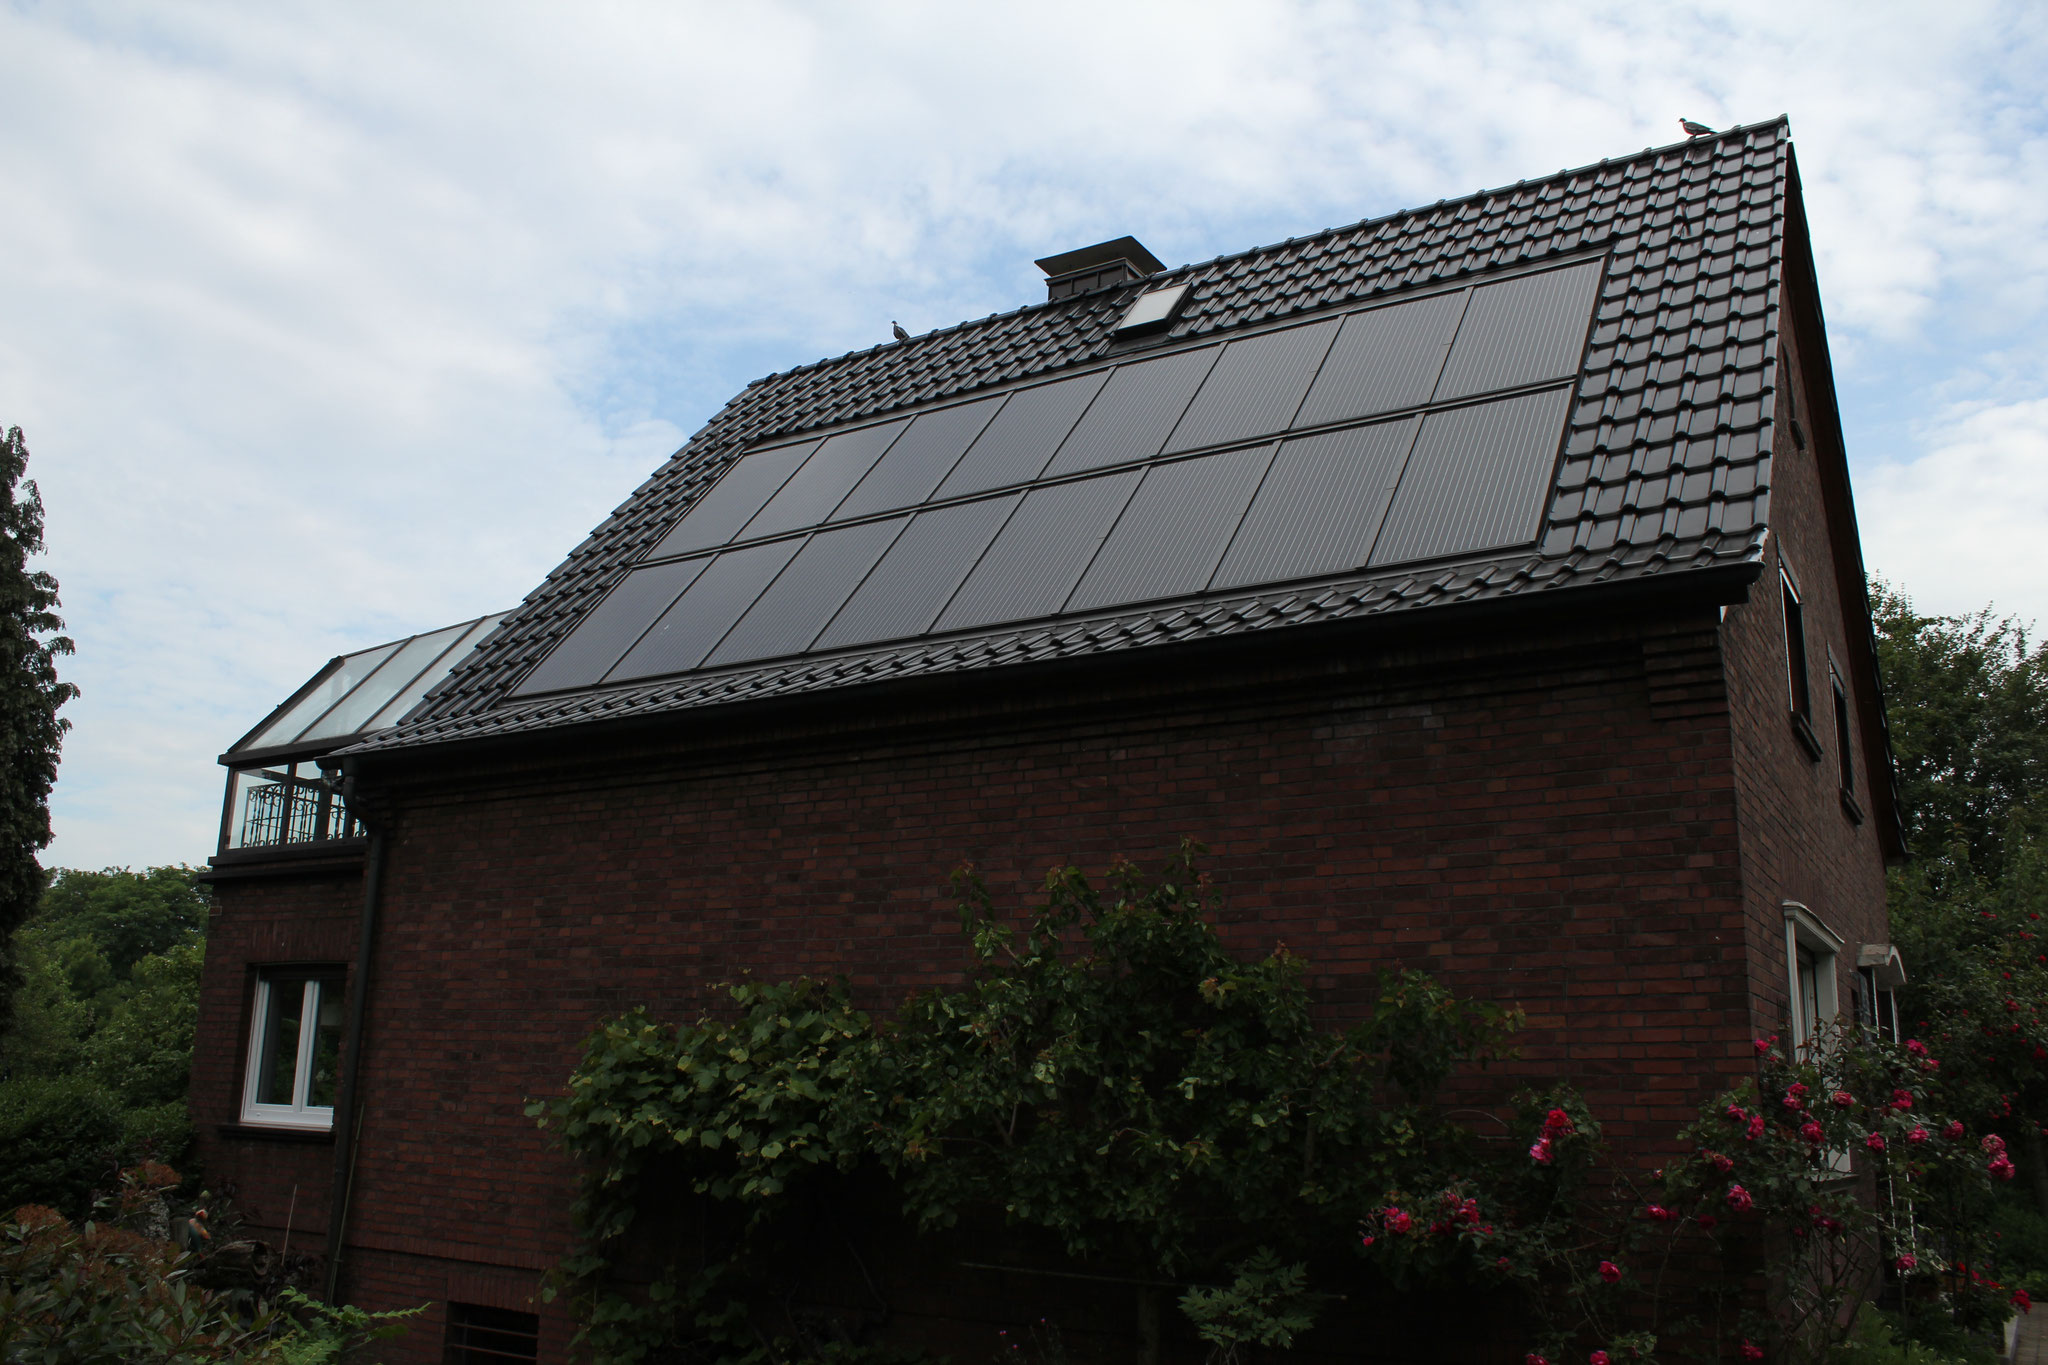 Dach mit Solar